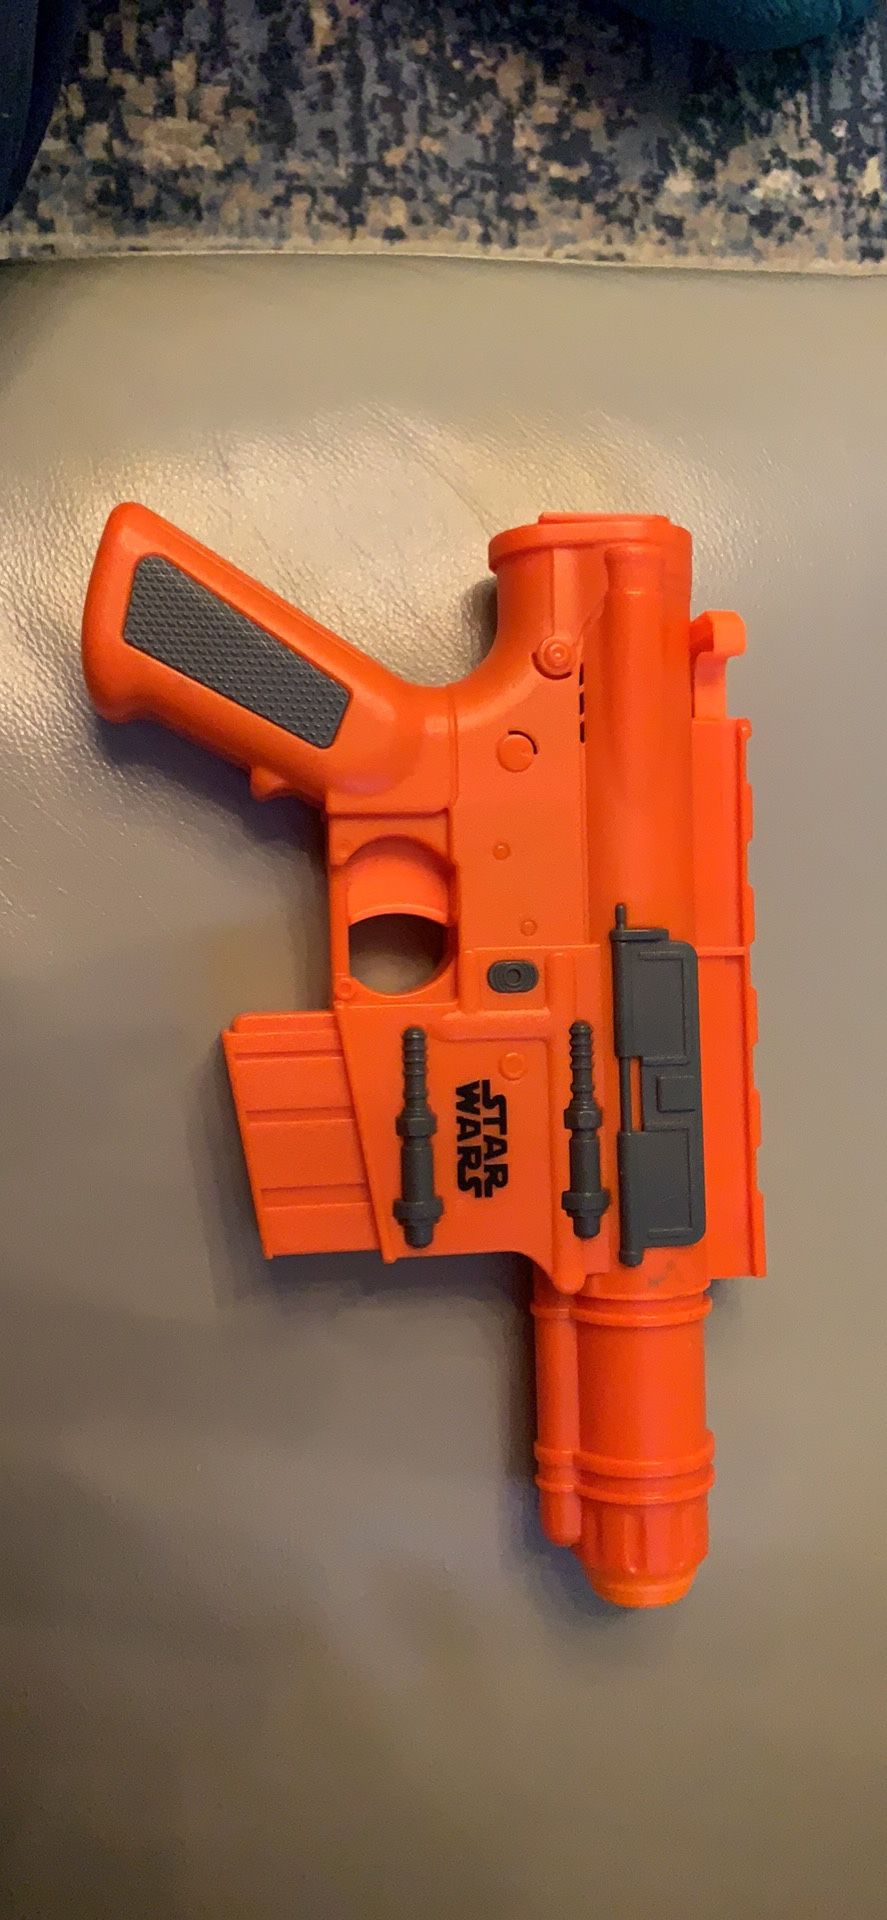 Nerf Star Wars toy gun